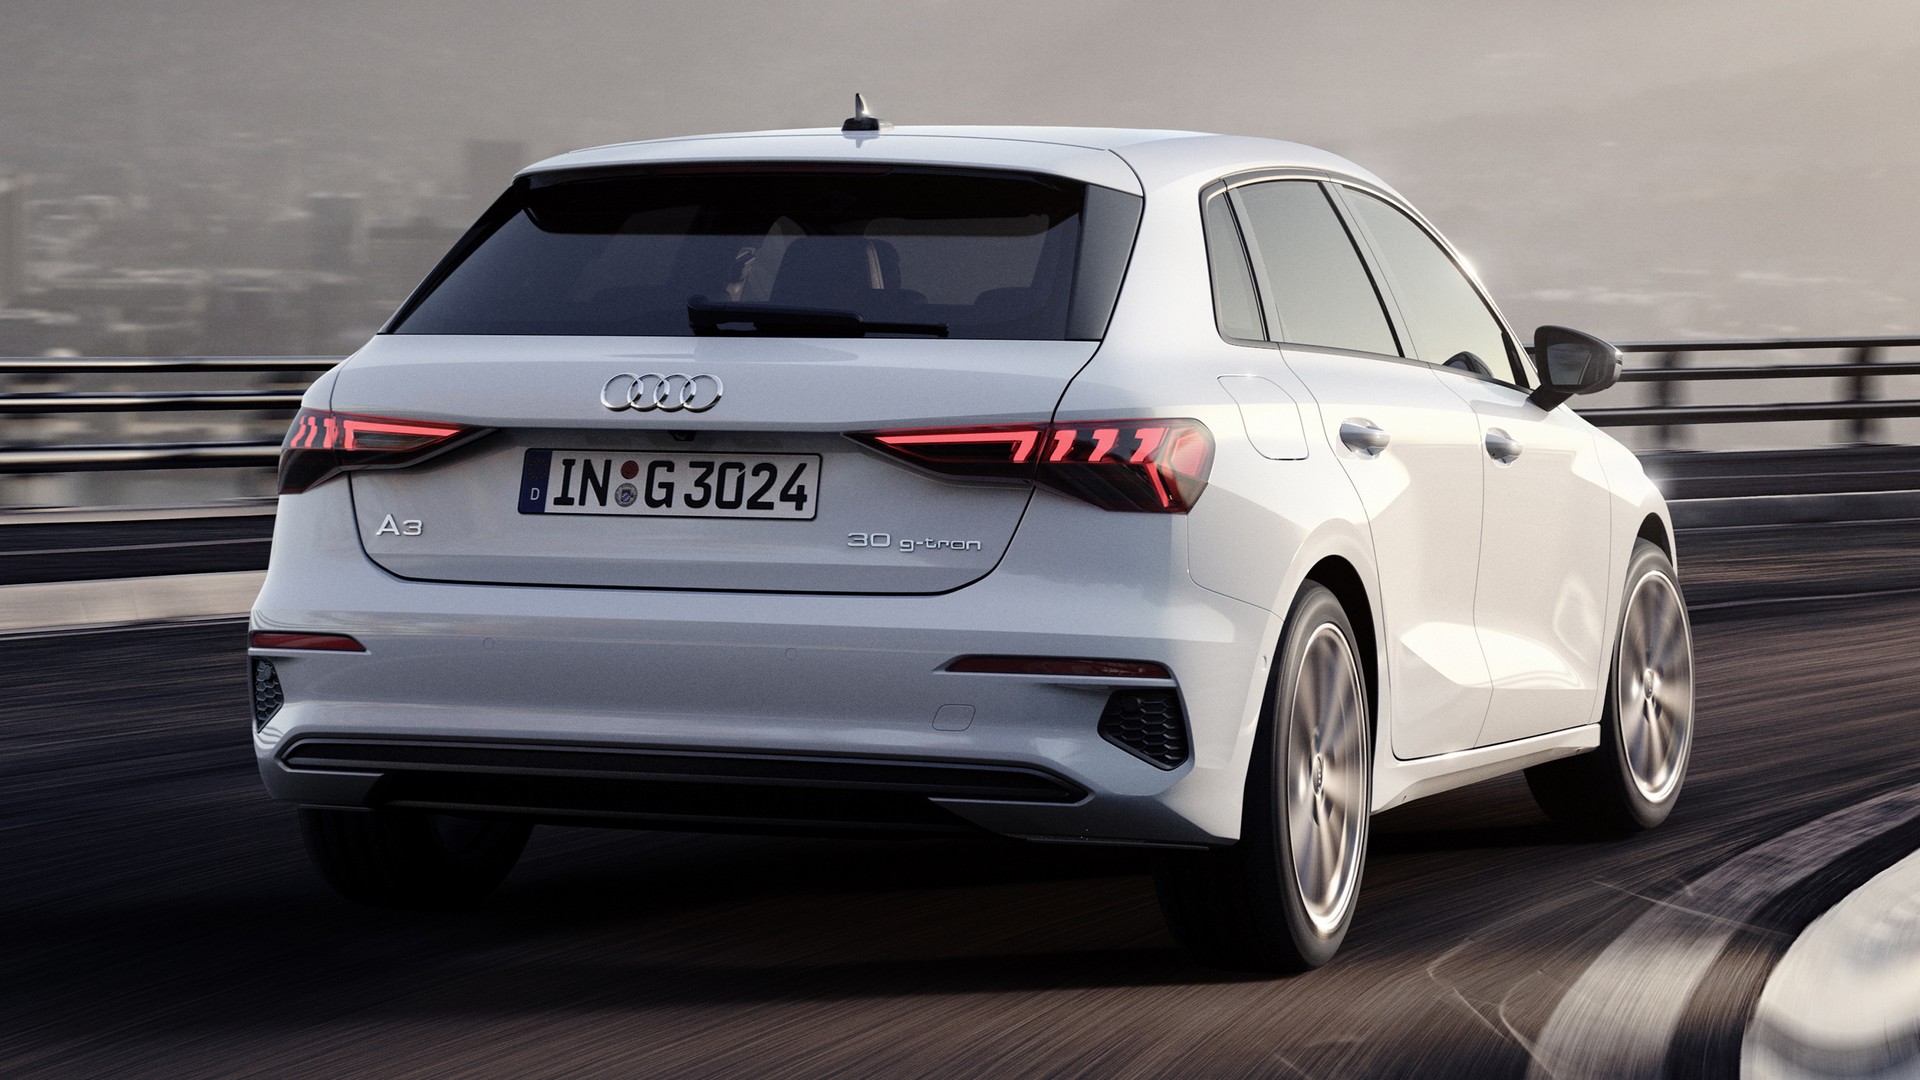 Audi renouvelle l'A3 g-tron pour réduire ses émissions grâce au gaz naturel